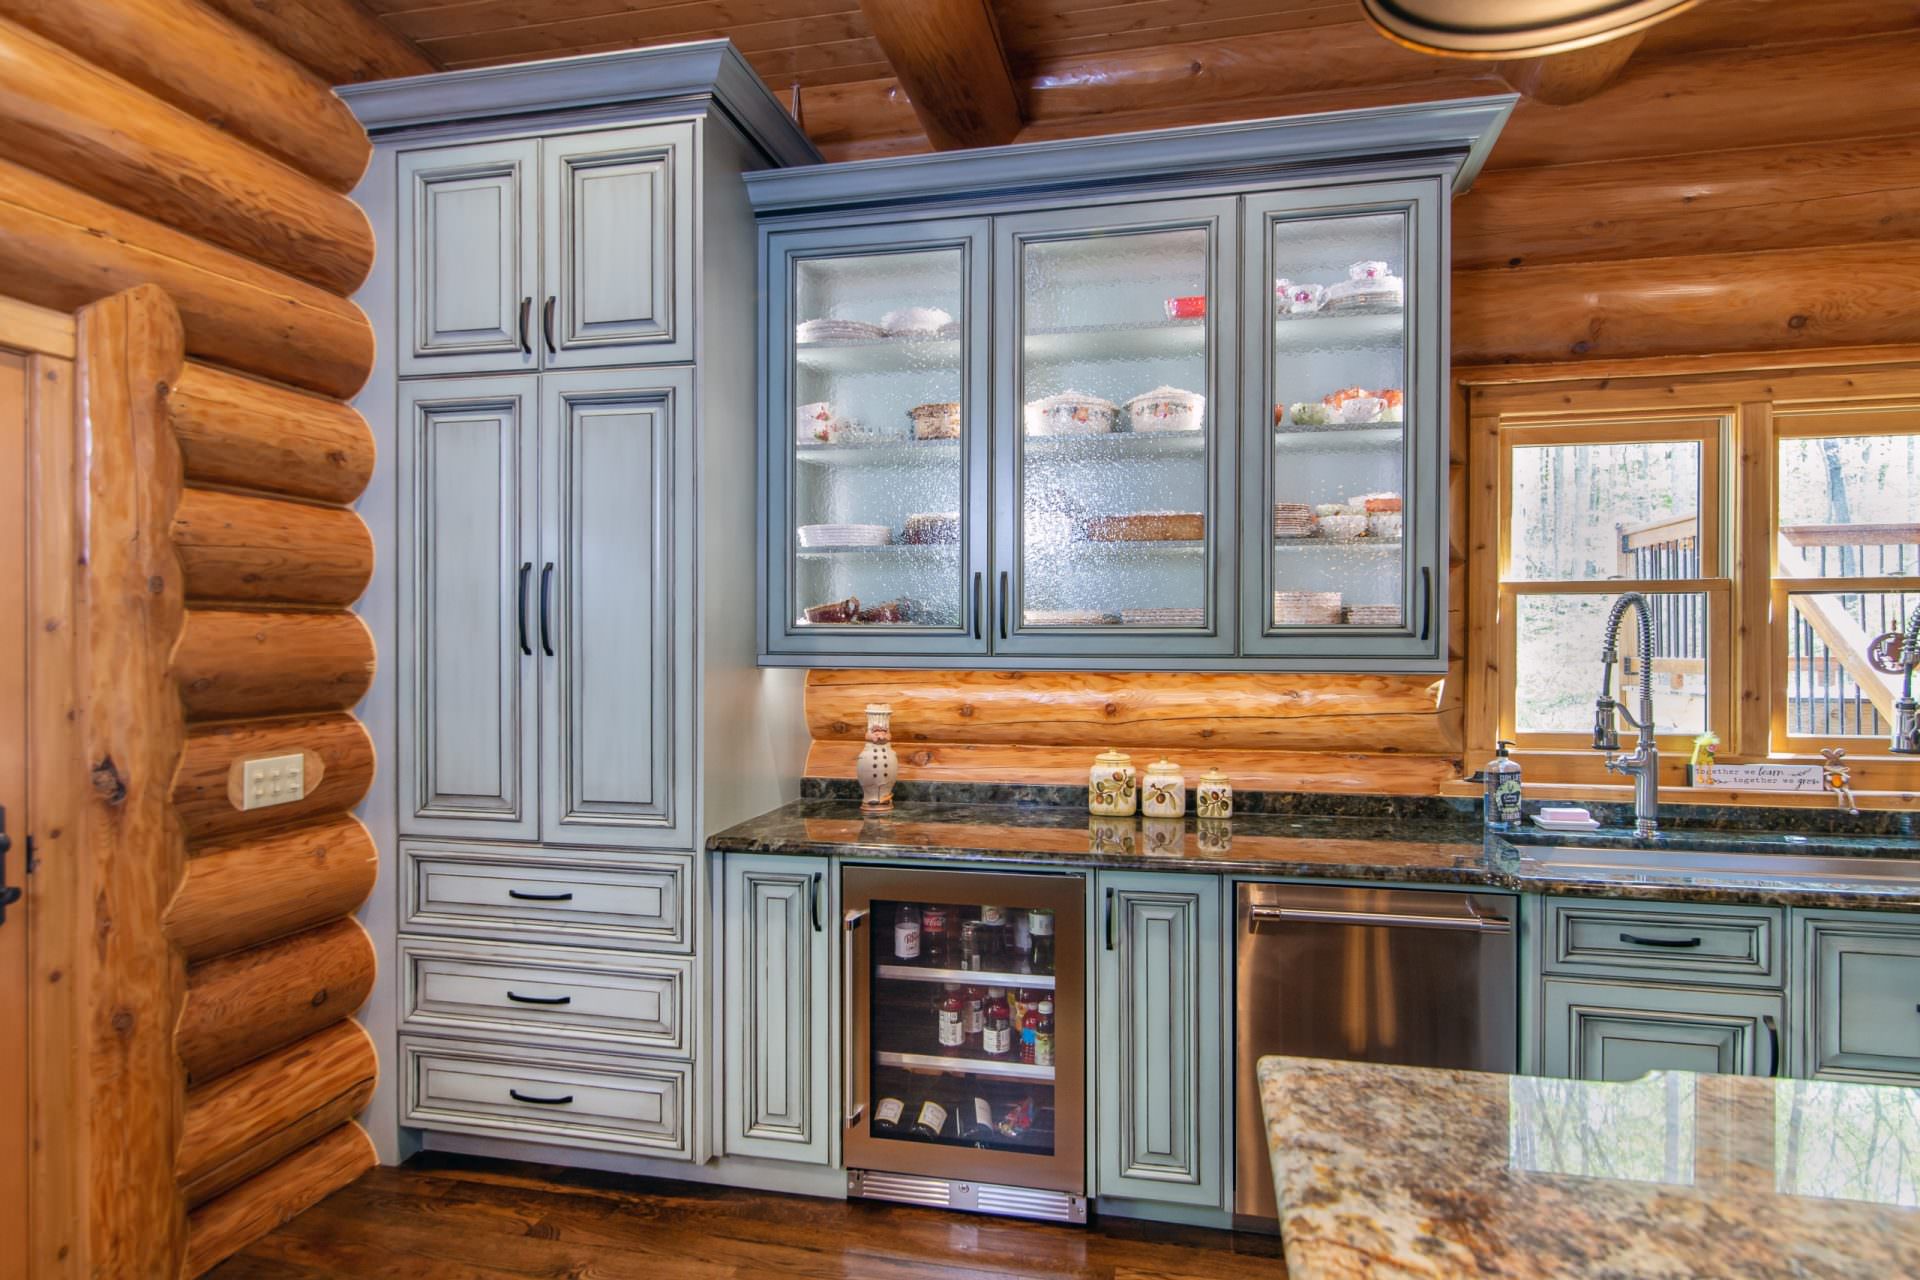 https://walkerwoodworking.com/wp-content/uploads/2021/05/Walker-Woodworking-custom-cabinets-glass-front-cabinet-beverage-cooler-light-blue-kitchen-cabinets-glazed-cabinets-scaled.jpg